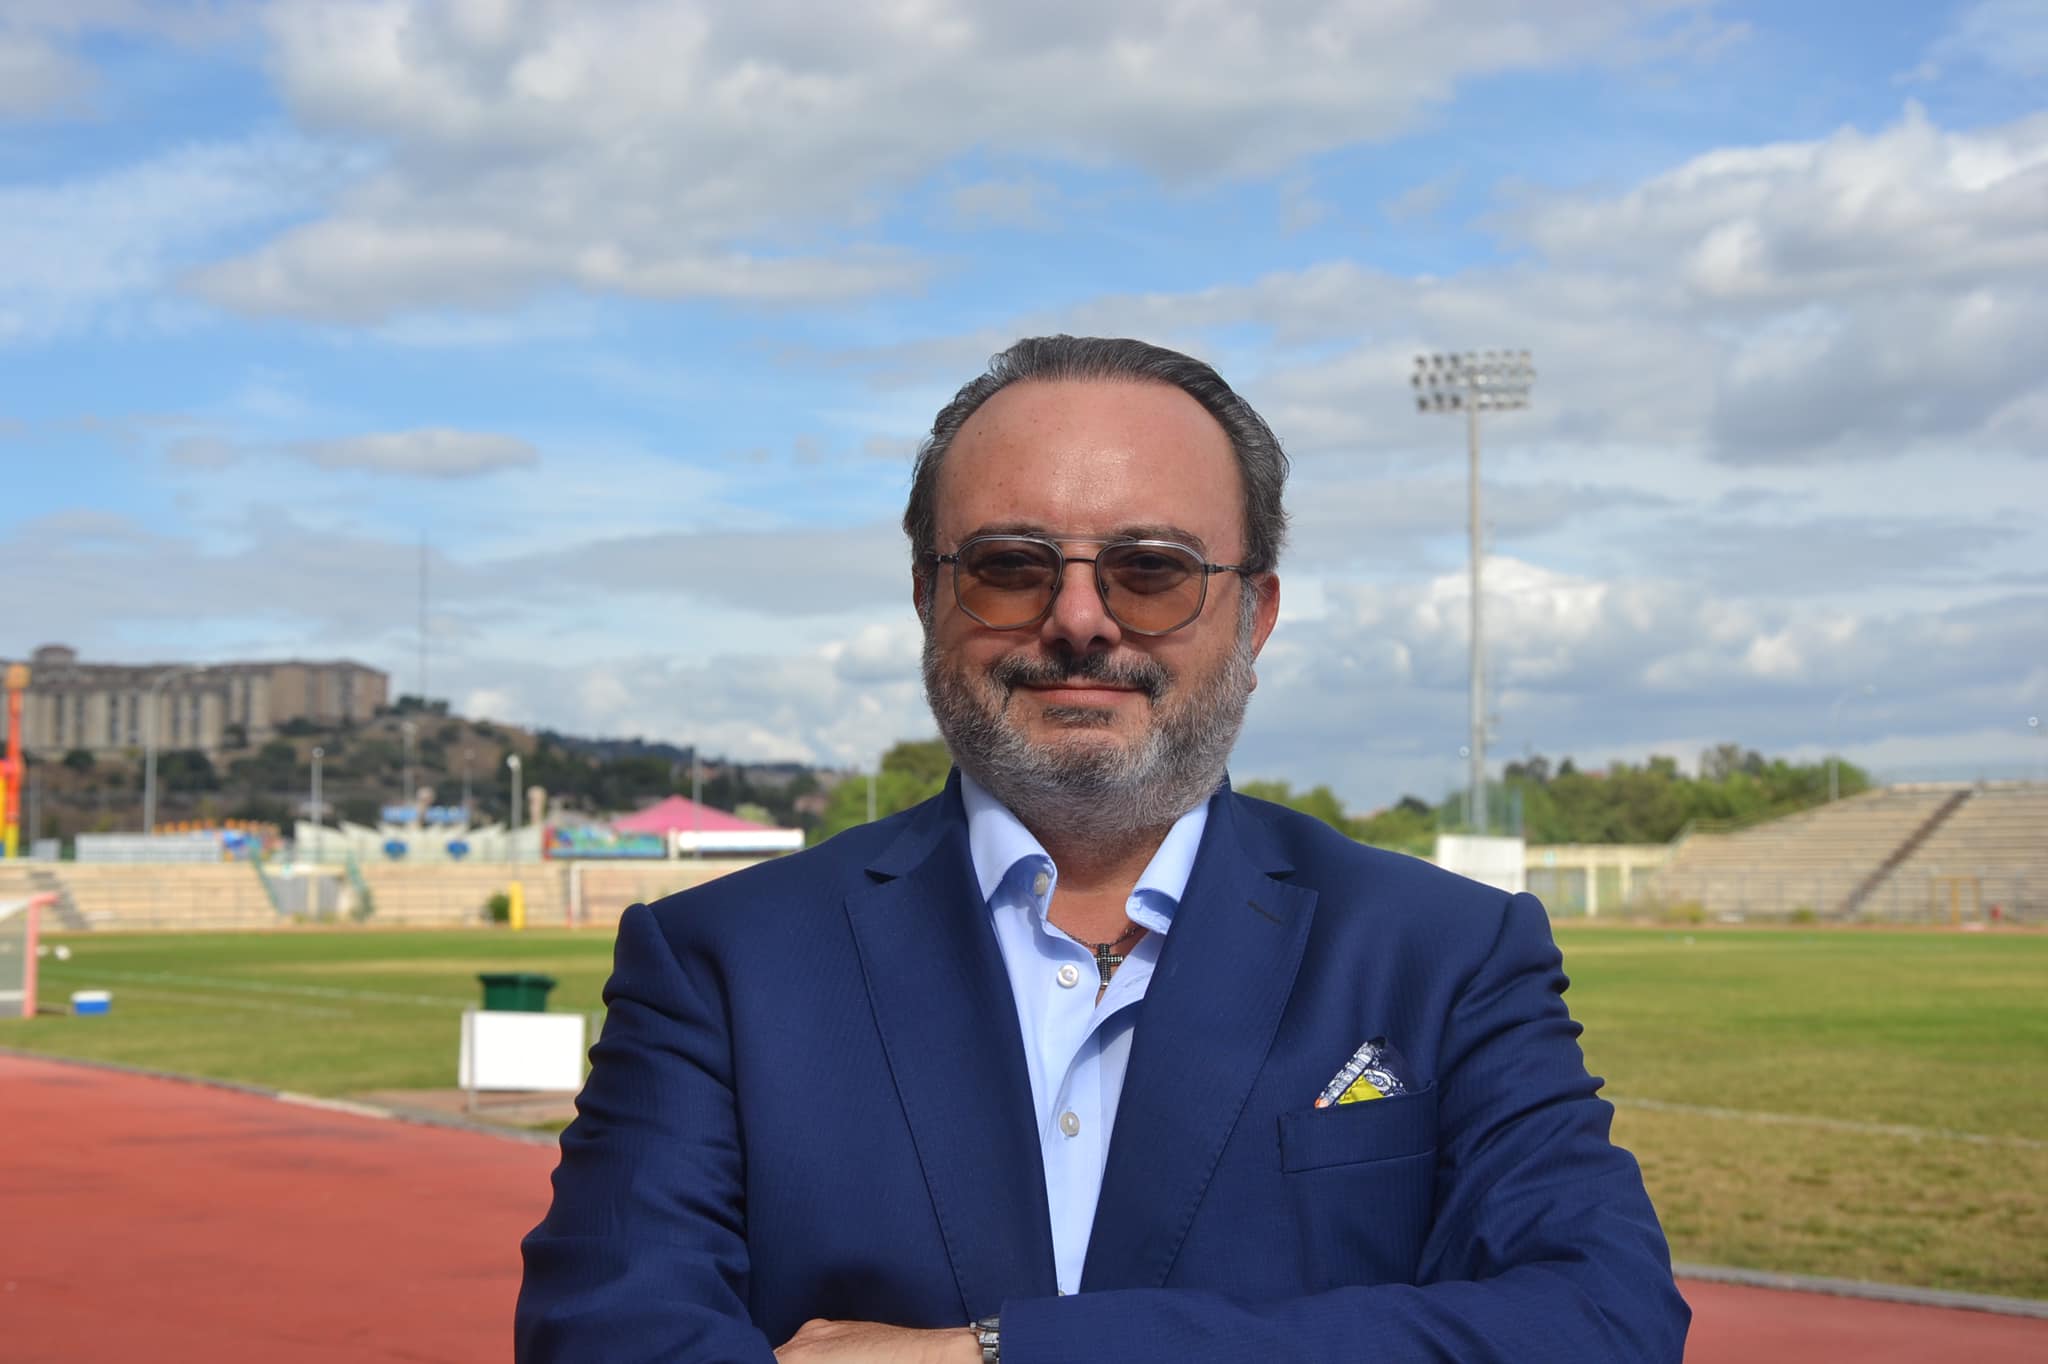 Progetto Nissa. Arialdo Giammusso: “Ringrazio il presidente Iacona, ma la mia esperienza alla Nissa si è conclusa con le dimissioni da presidente”.